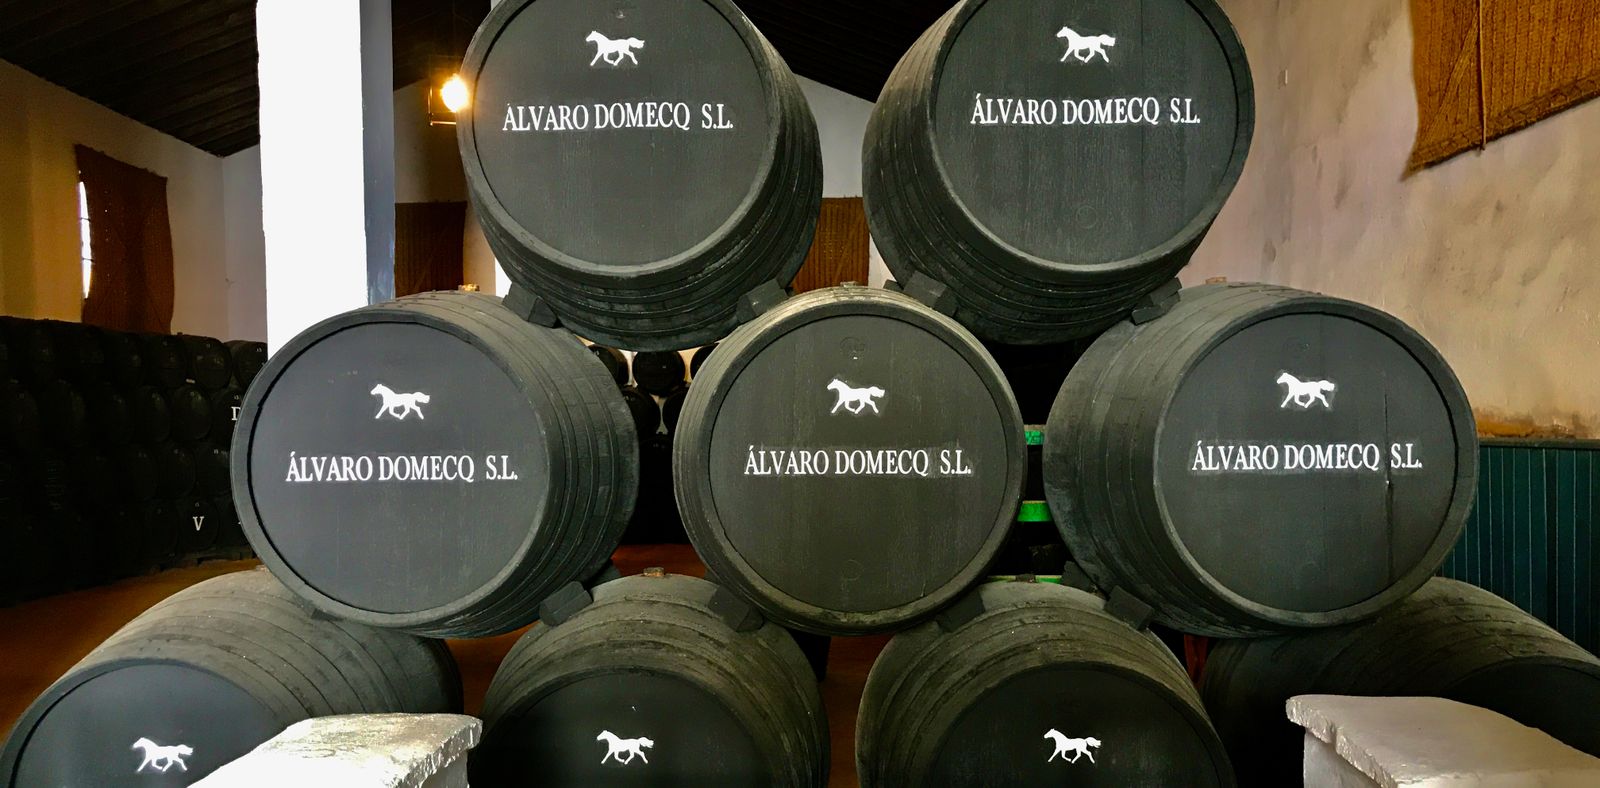 Een criadera y solera-systeem: de vaten liggen gestapeld en zijn met elkaar verbonden. Elk jaar wordt het systeem bovenaan bijgevuld met de nieuwe wijn. Een beperkte hoeveelheid rijpe sherry verlaat het systeem via de onderste vaten (solera).